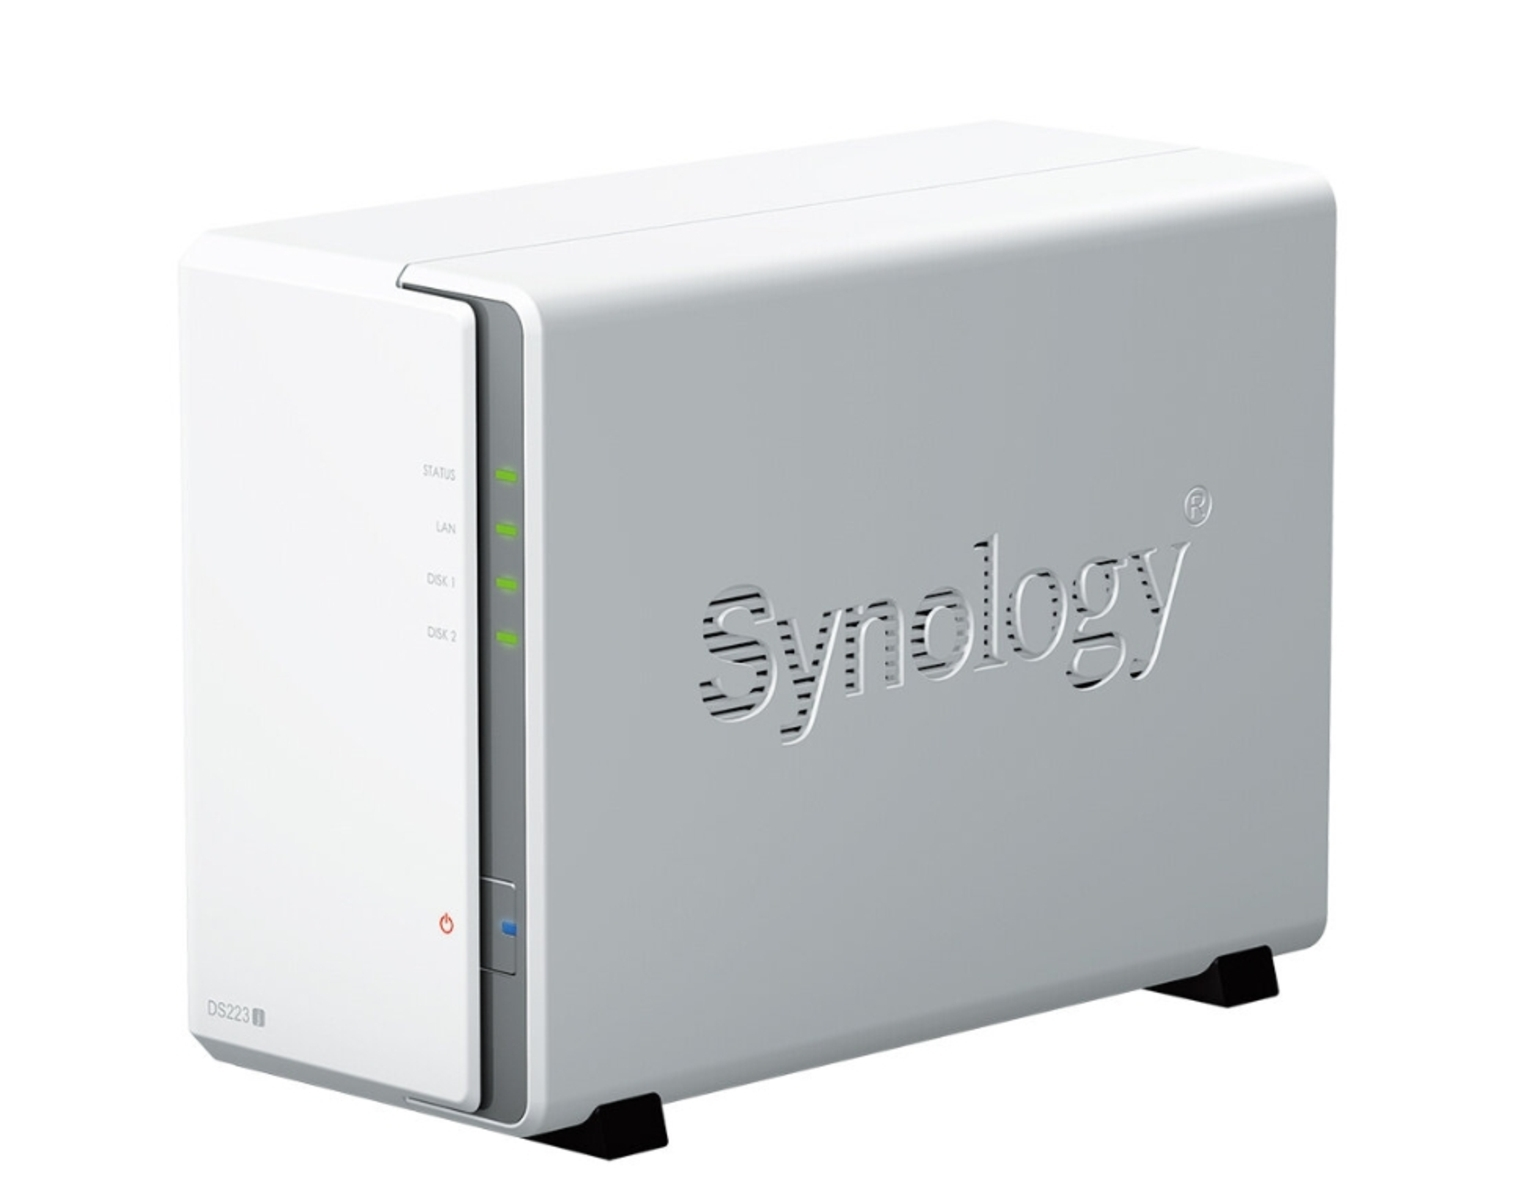 3,5 12 TB intern WD SYNOLOGY 2x DS223J mit Zoll 12TB total Festplatte PLUS 6TB RED